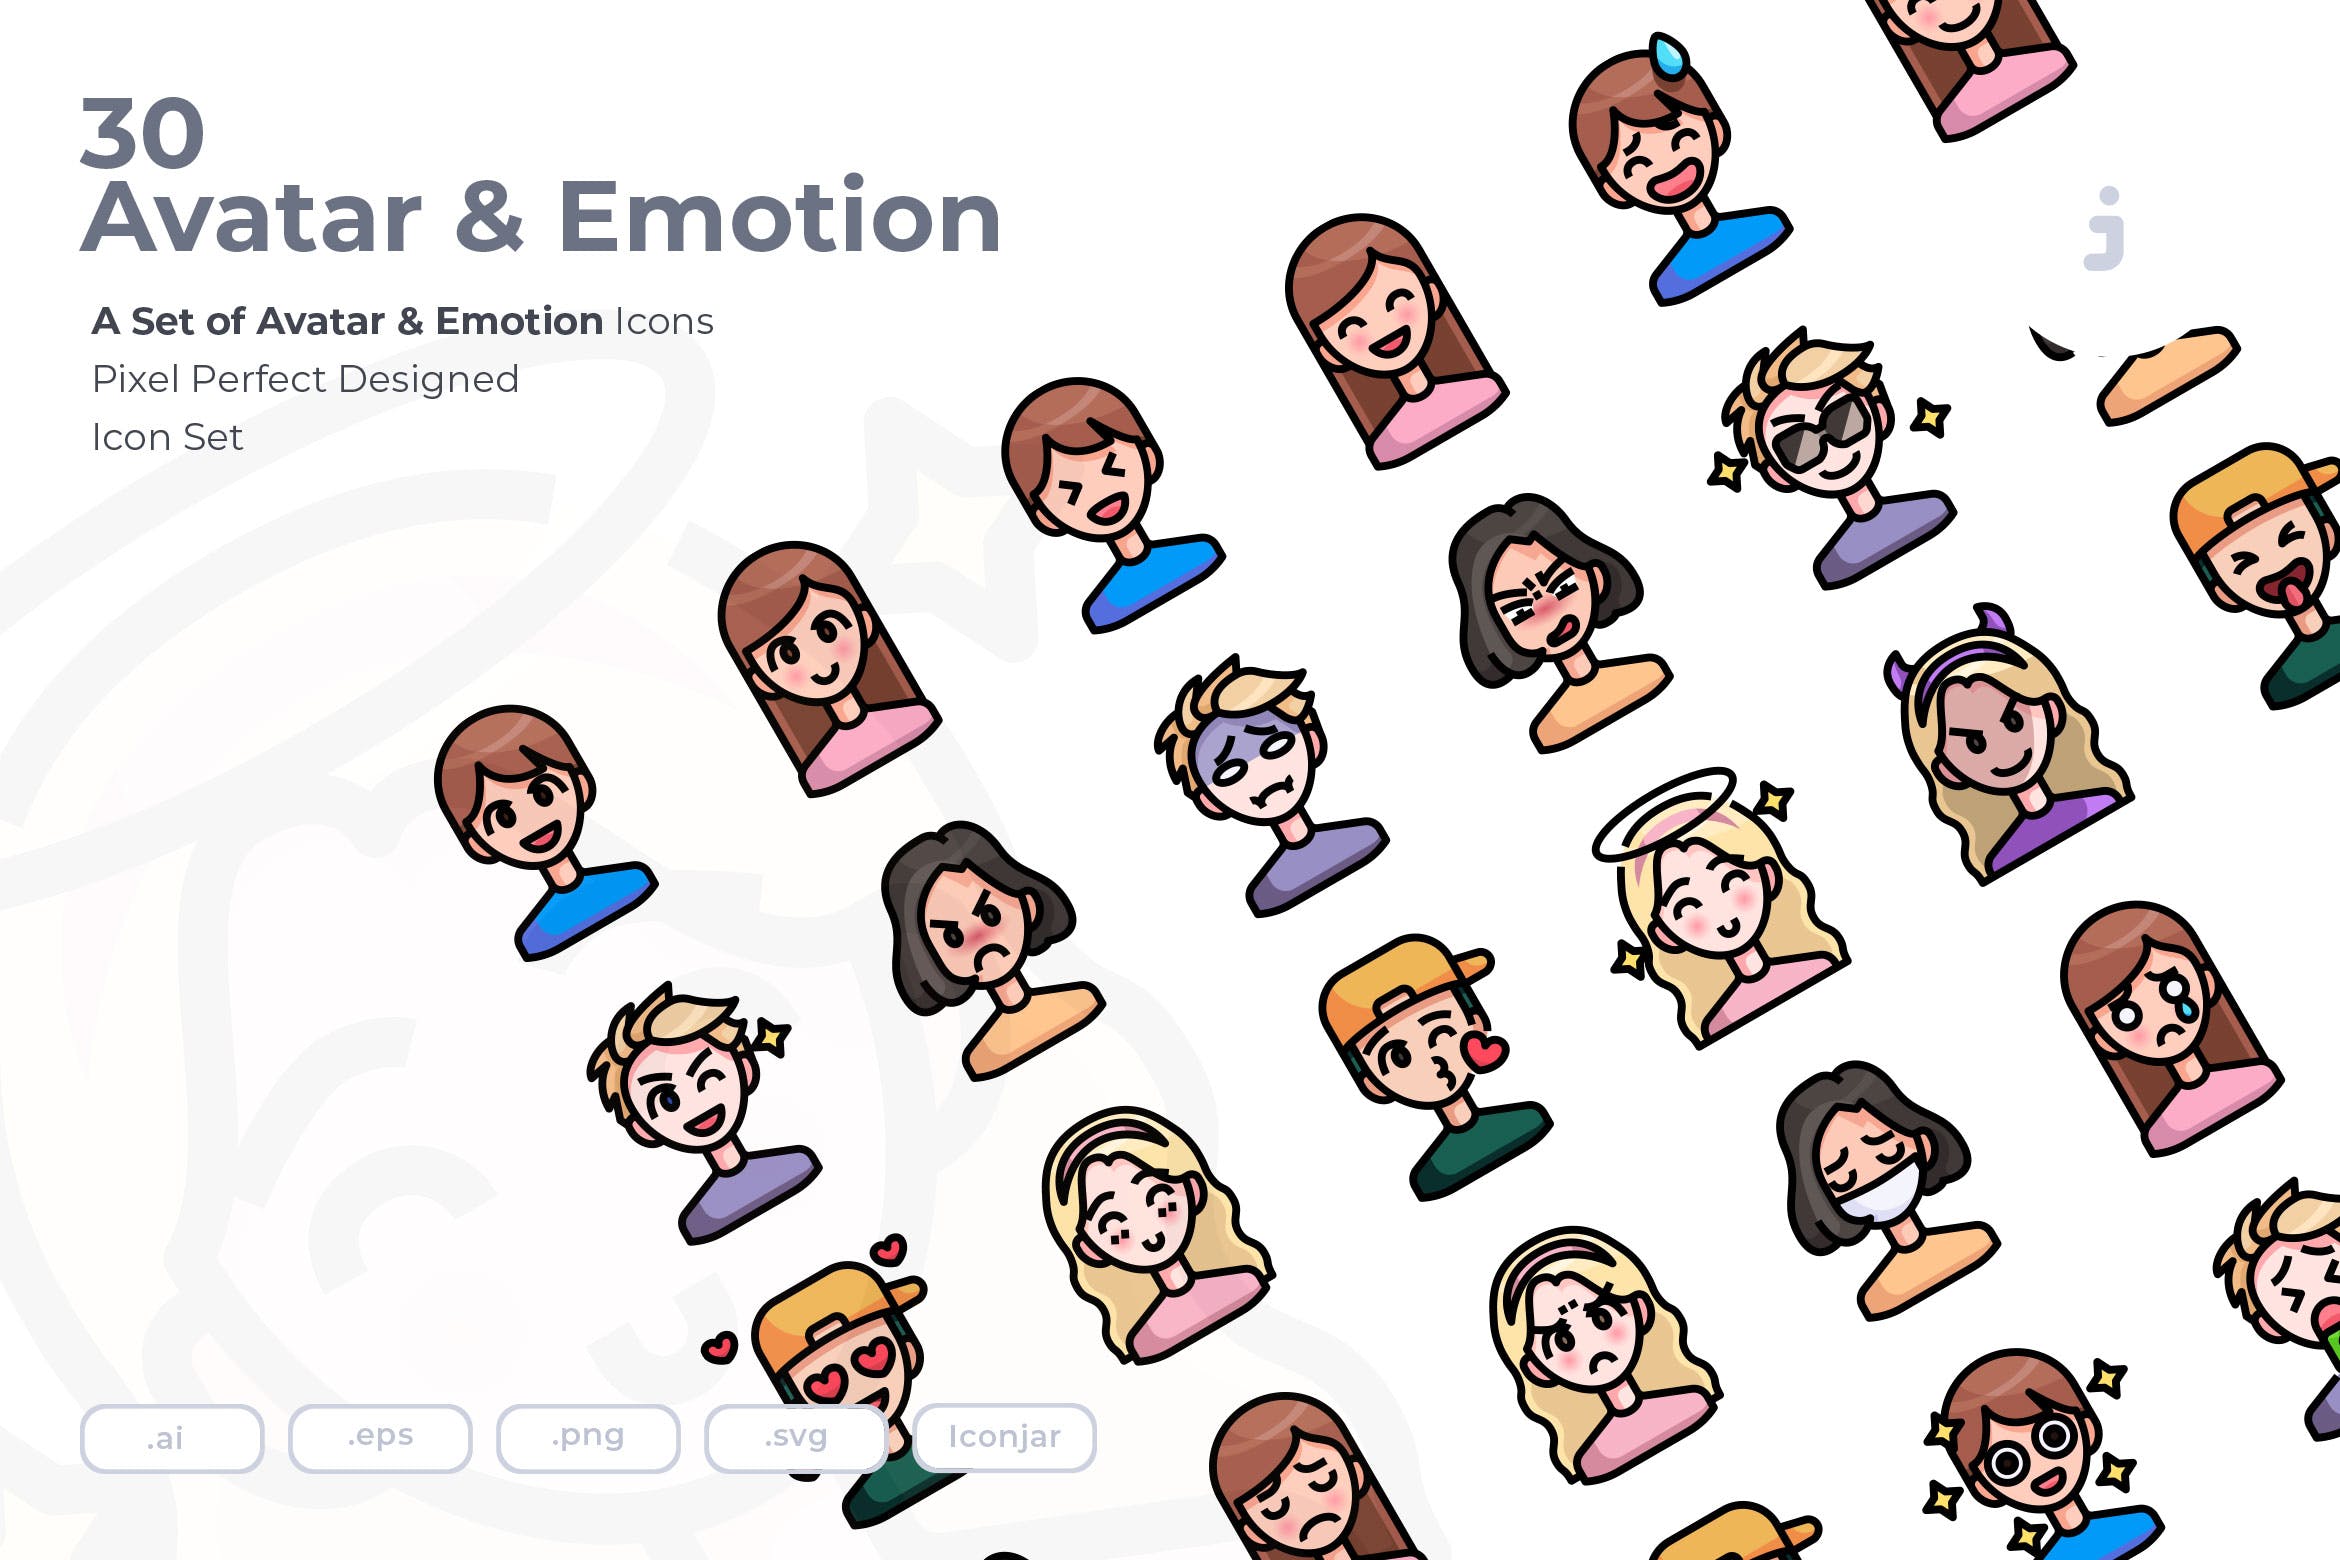 30枚彩色人物头像&表情矢量素材库精选图标 30 Avatar and Emotion Icons插图